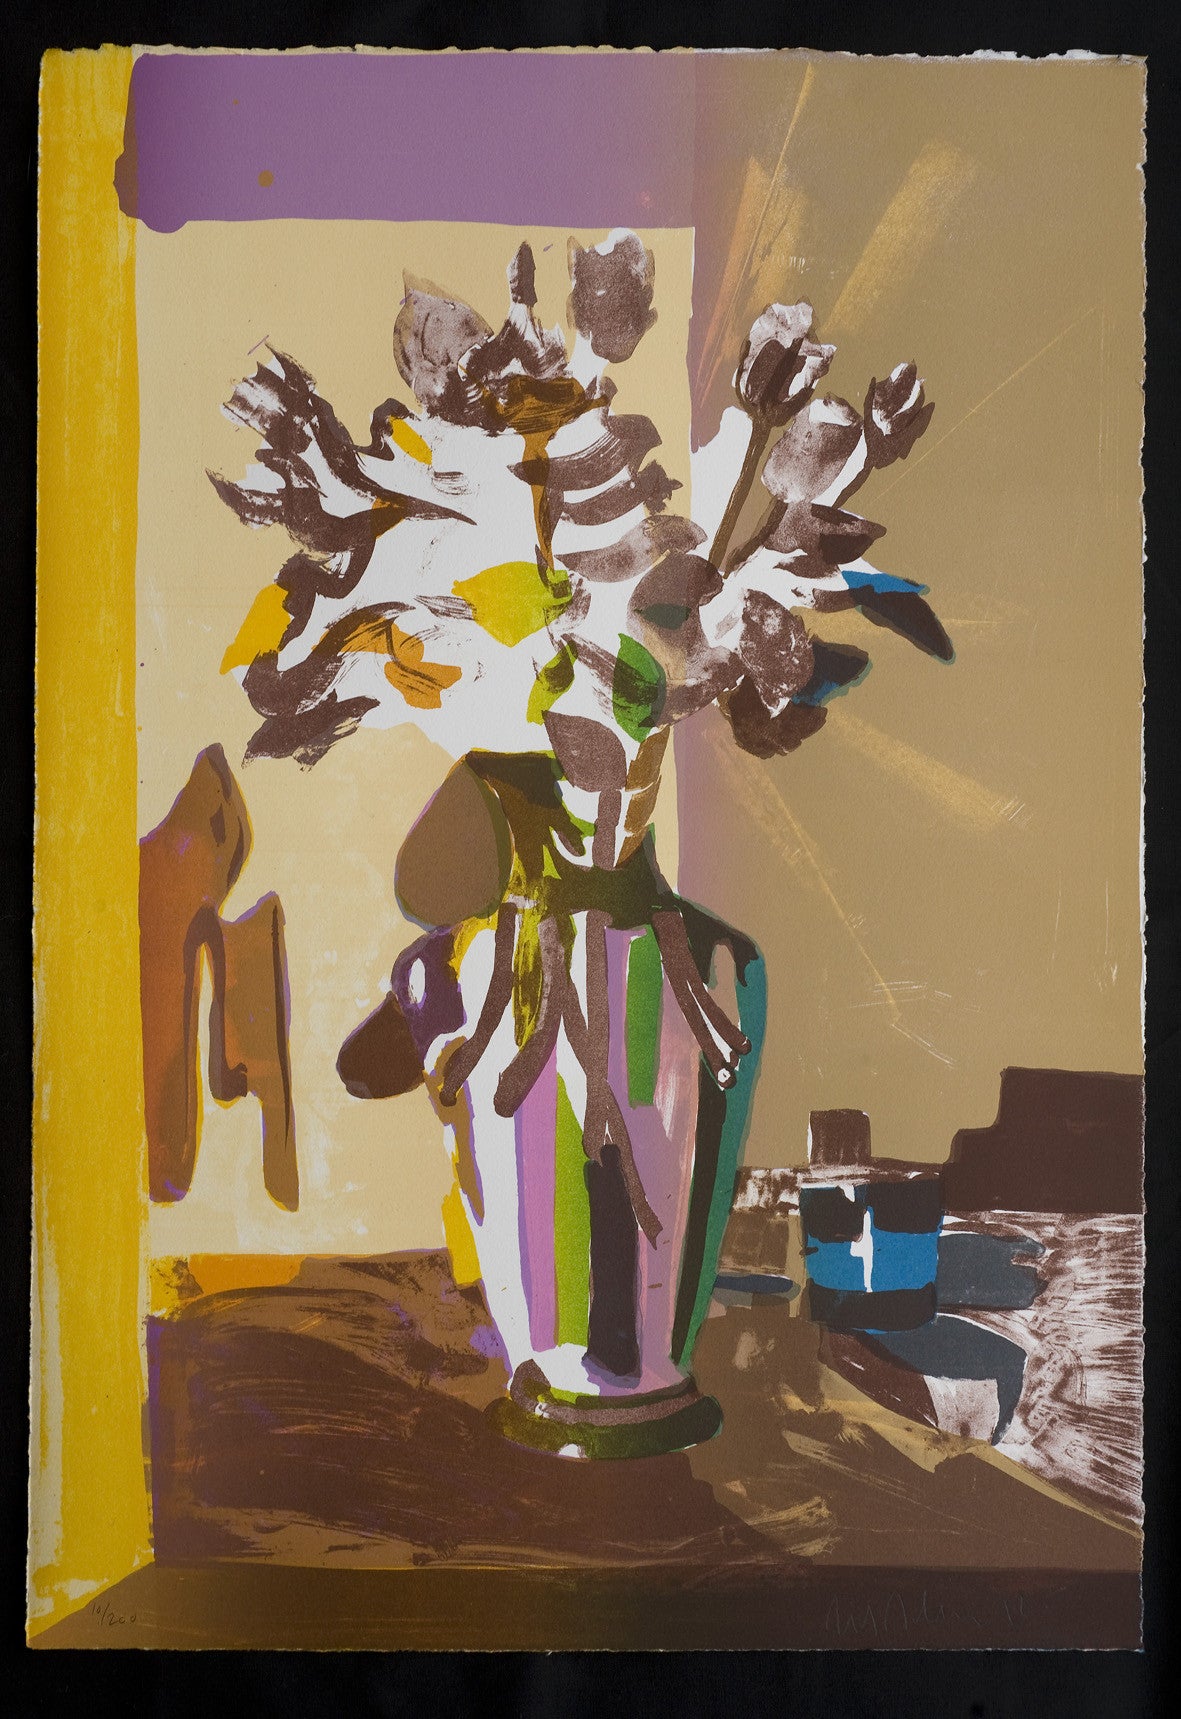 Litografi af Erik A. Frandsen. Blomster i vase. Nuance mørk